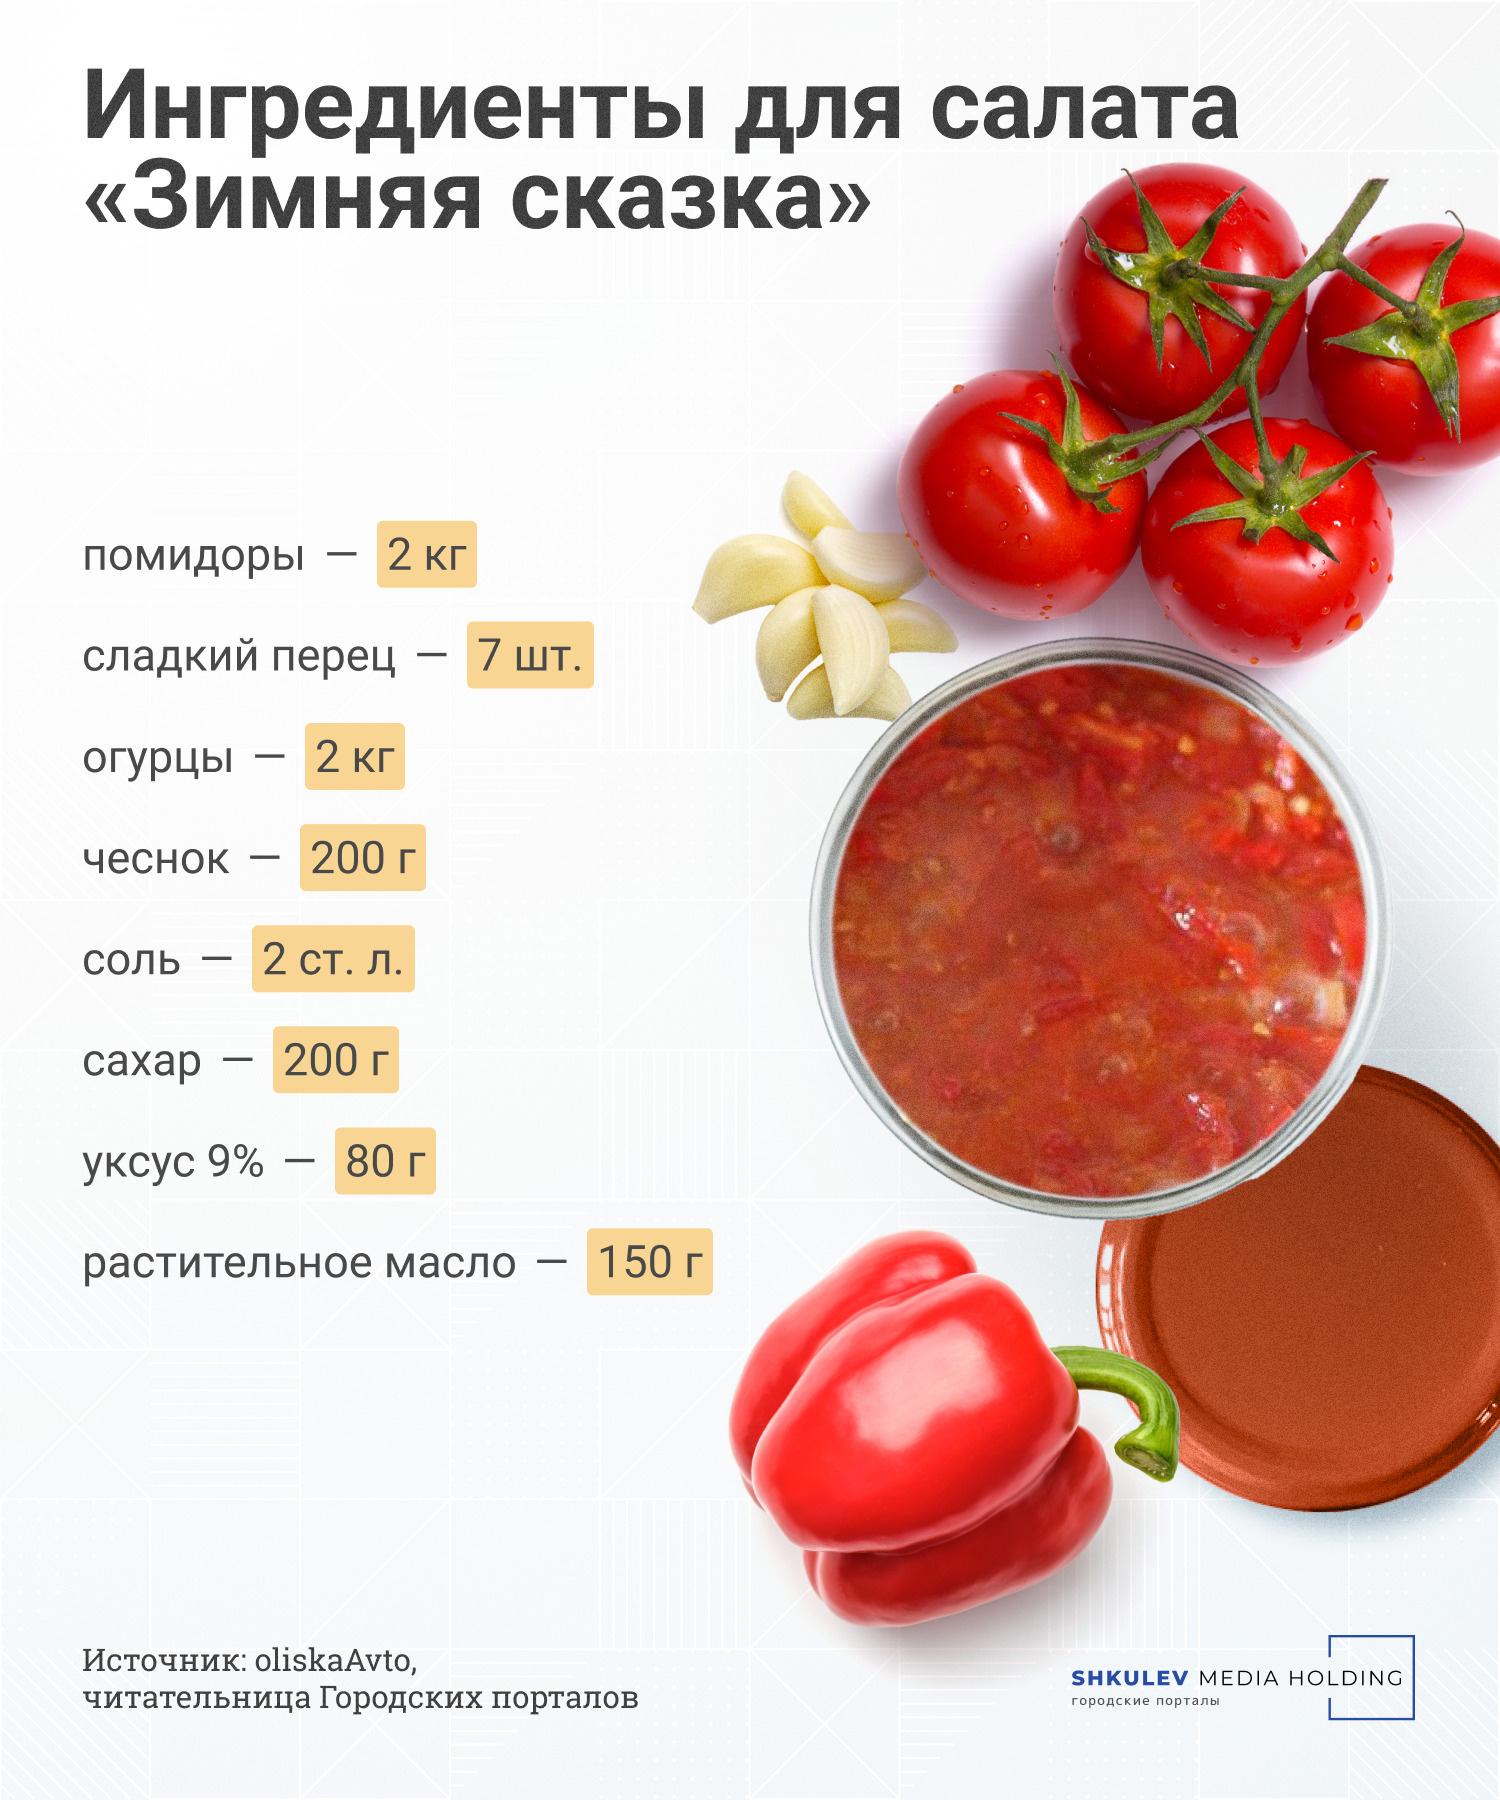 3 рецепта болгарского перца на зиму: вкусные и простые заготовки | РБК Life